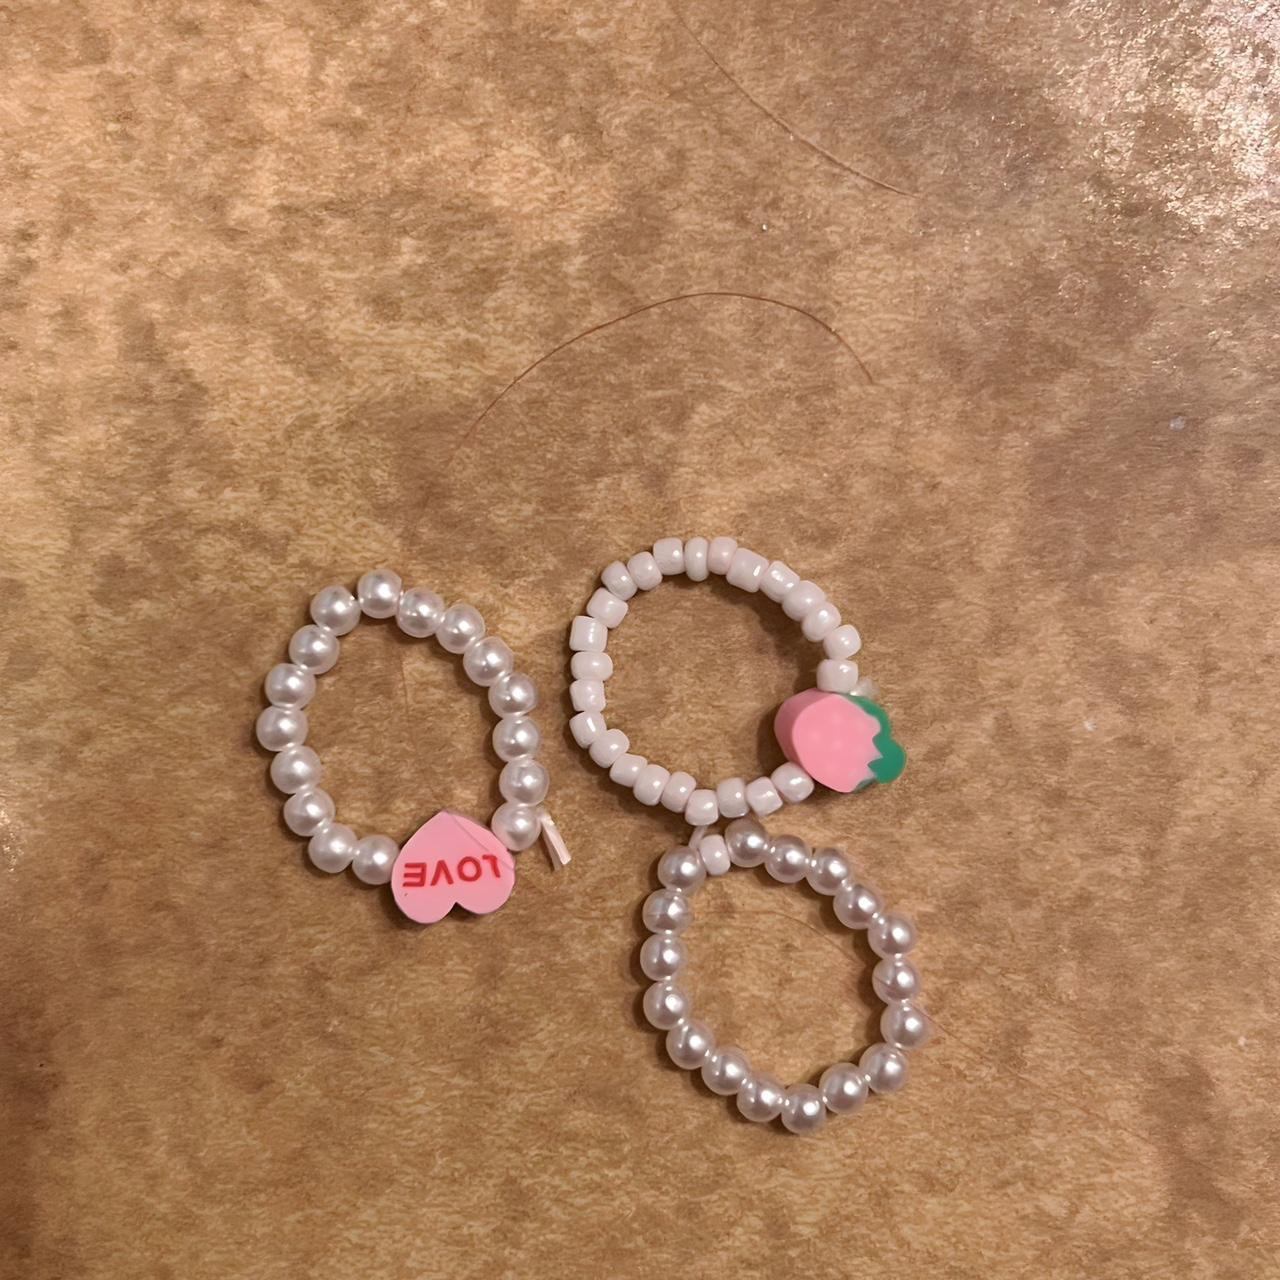 Beaded rings #rings #kawaii #coquette #beads - Depop